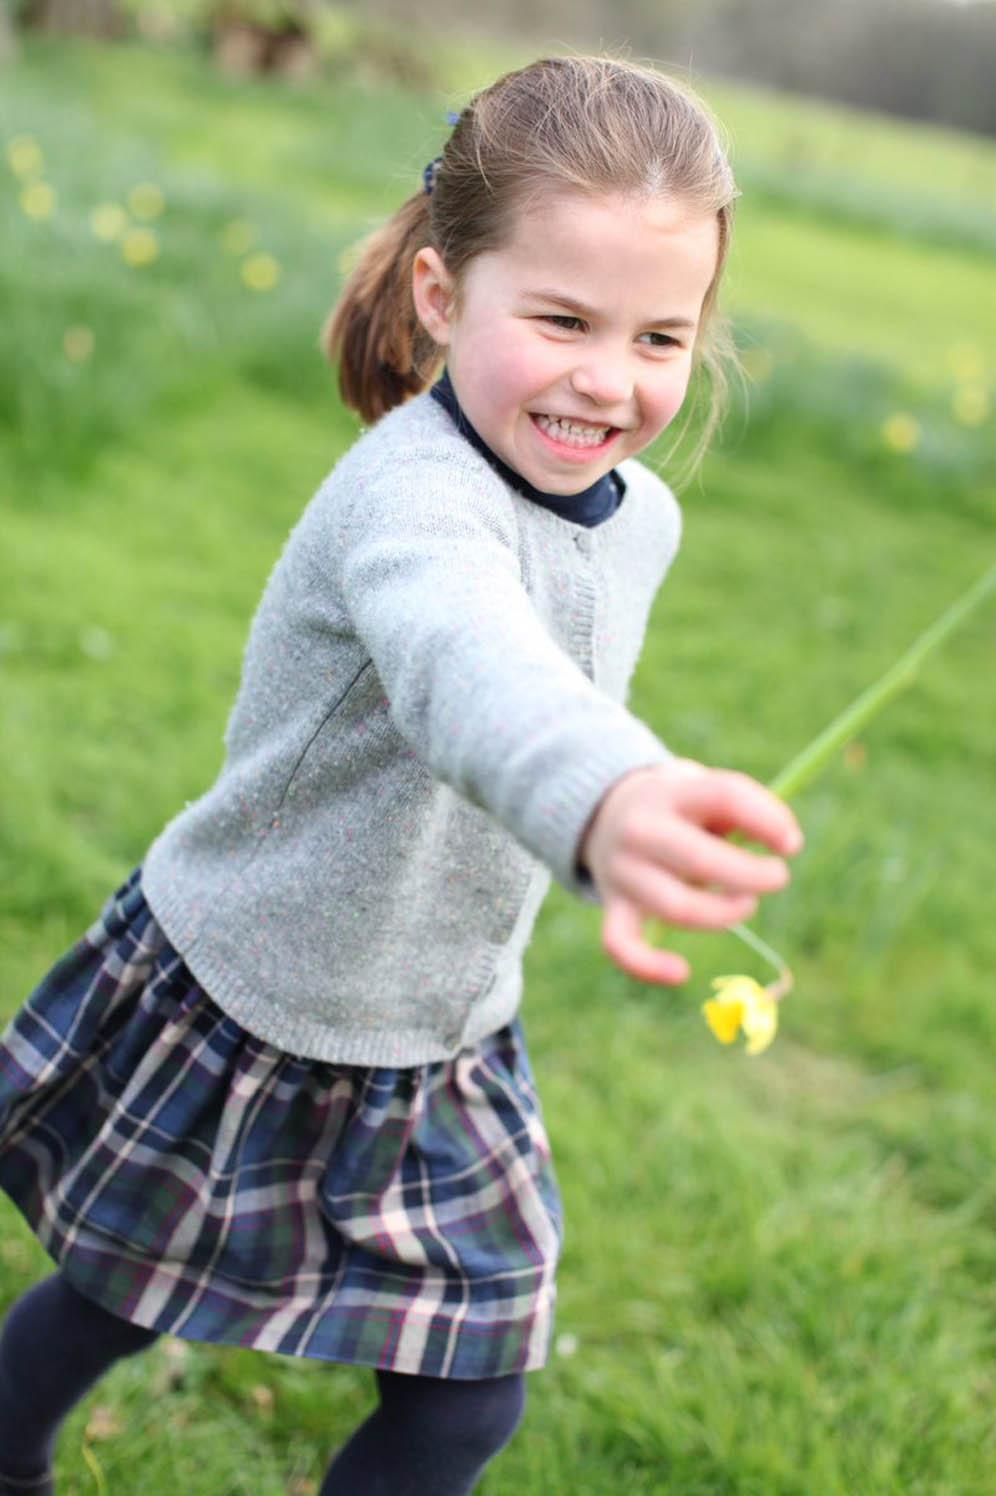 【夏洛特小公主4歲生日】2019年5月2日是夏洛特4歲生日，肯辛頓宮在5月1日發布3張由凱特於4月拍攝的夏洛特小公主照片，祝賀夏洛特4歲生日。（Kensington Palace Twitter圖片）